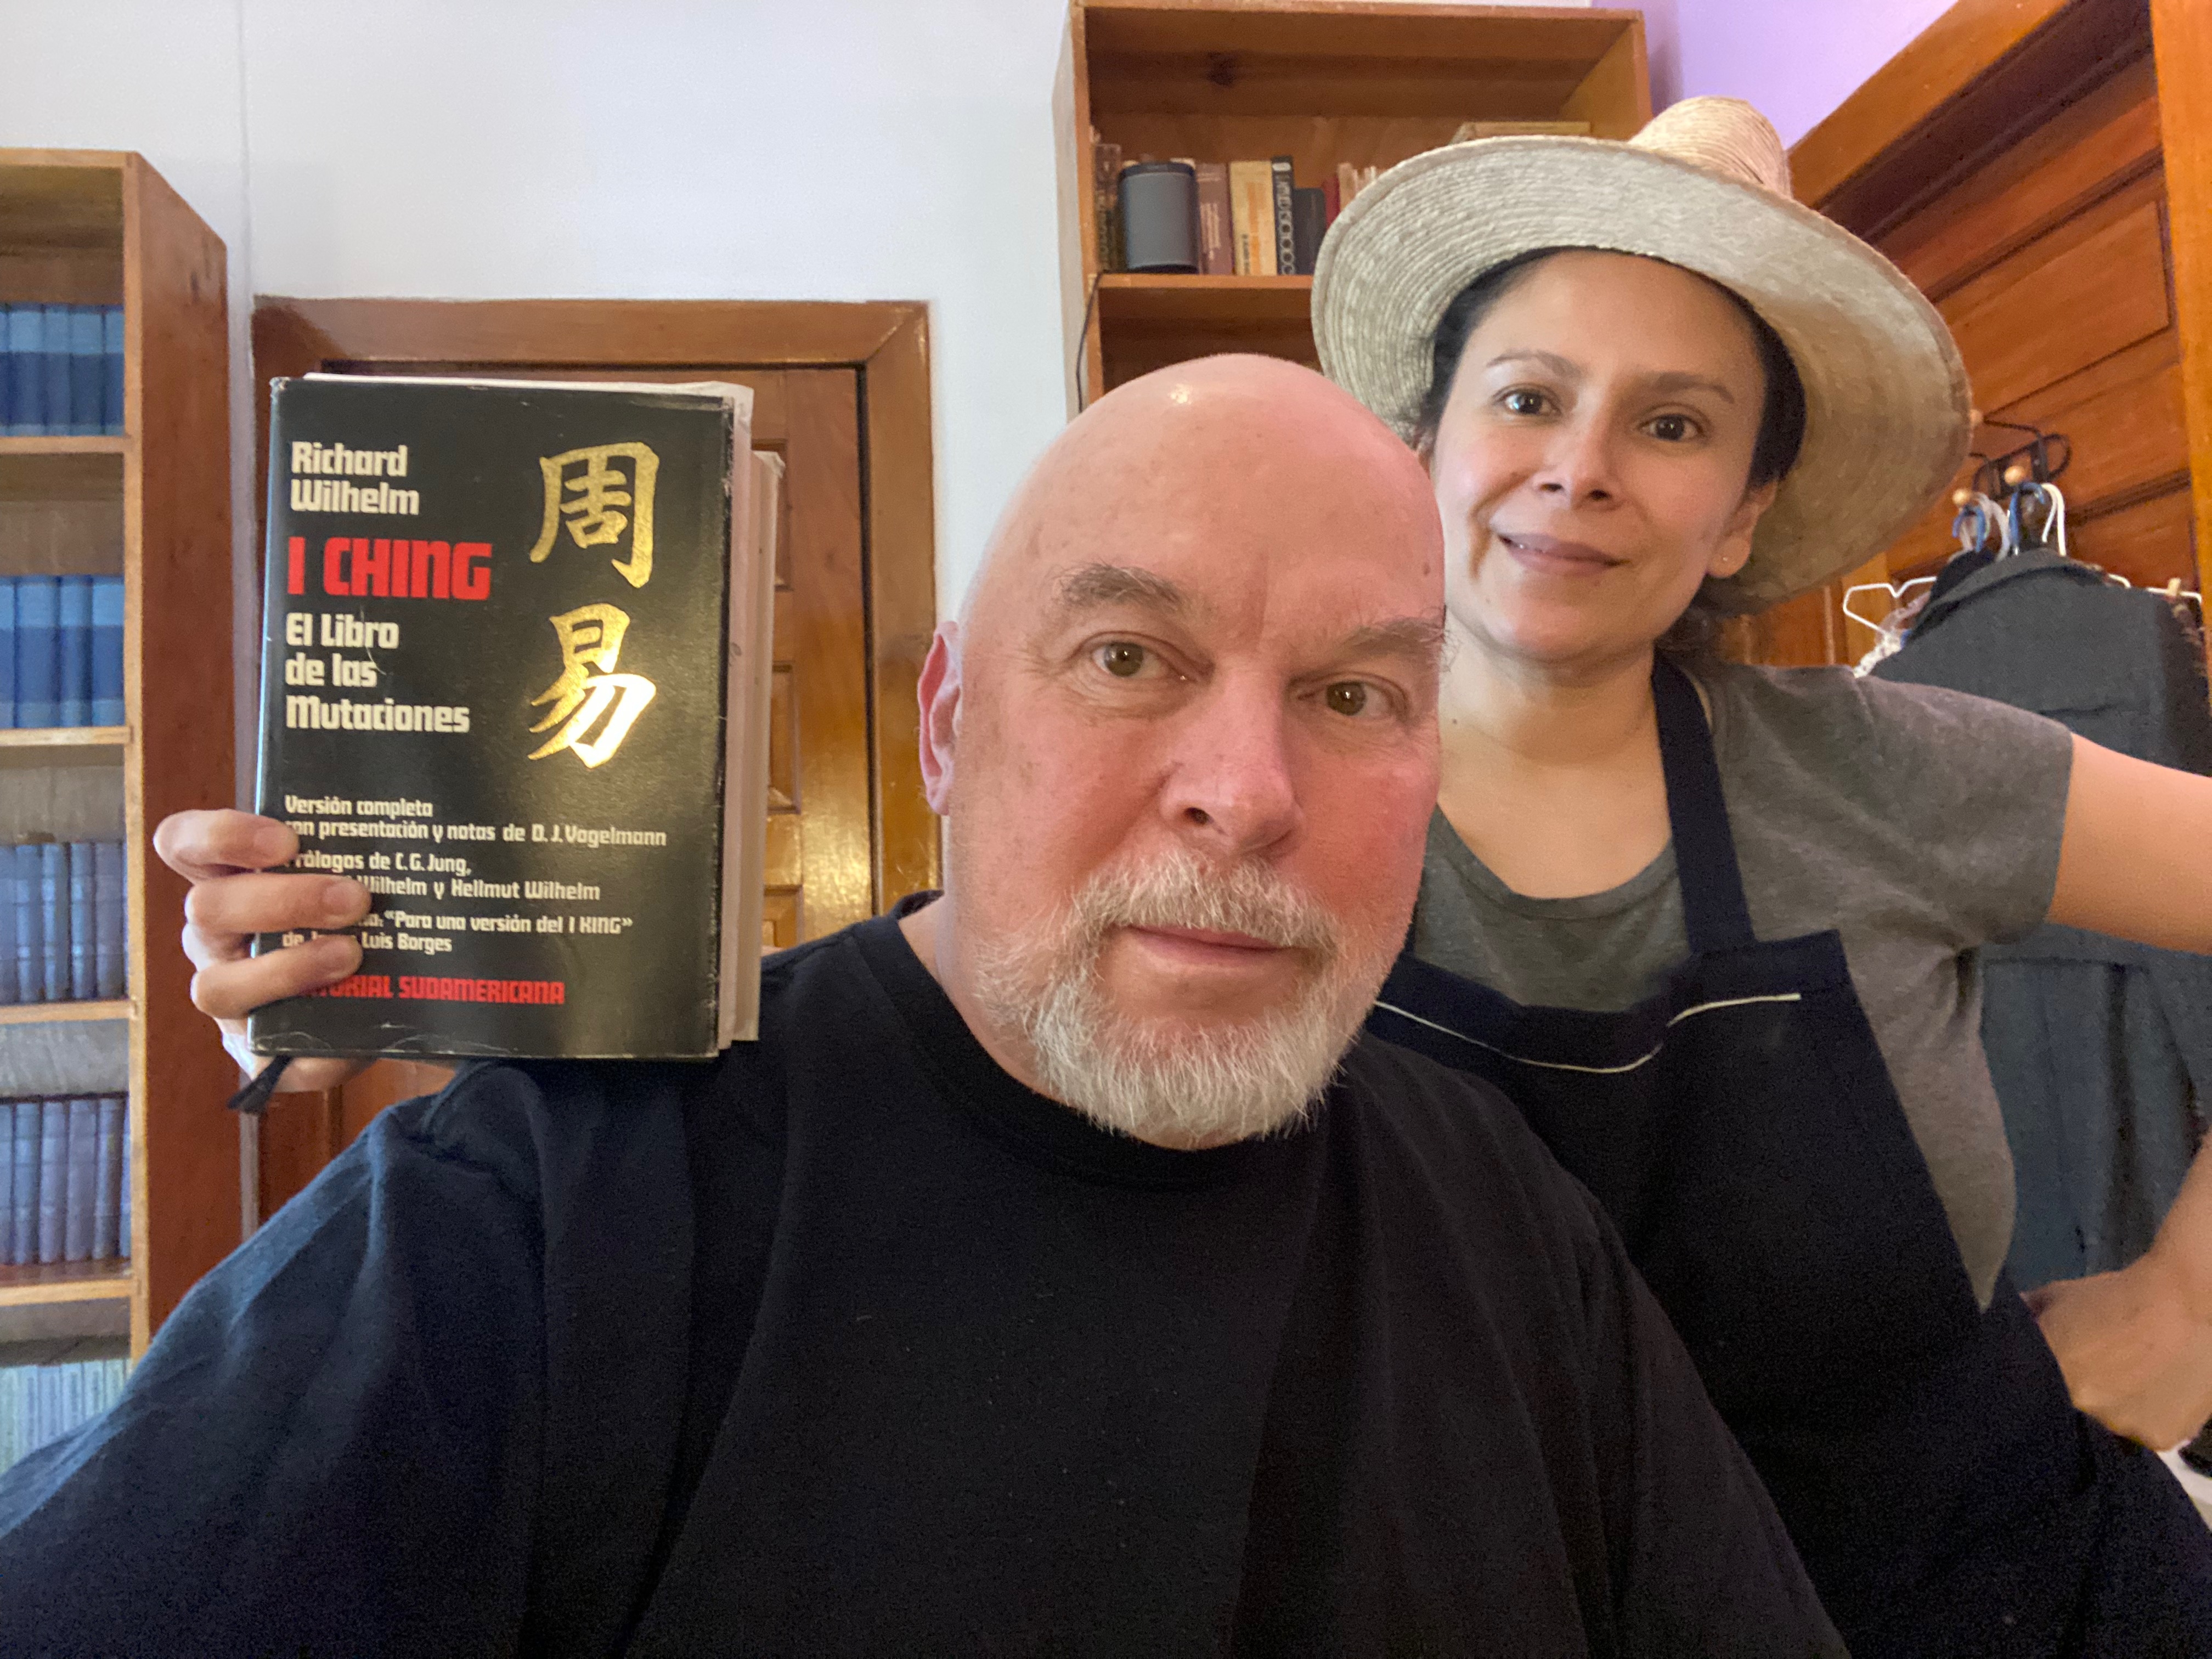 El I Ching y el laberinto de los libros